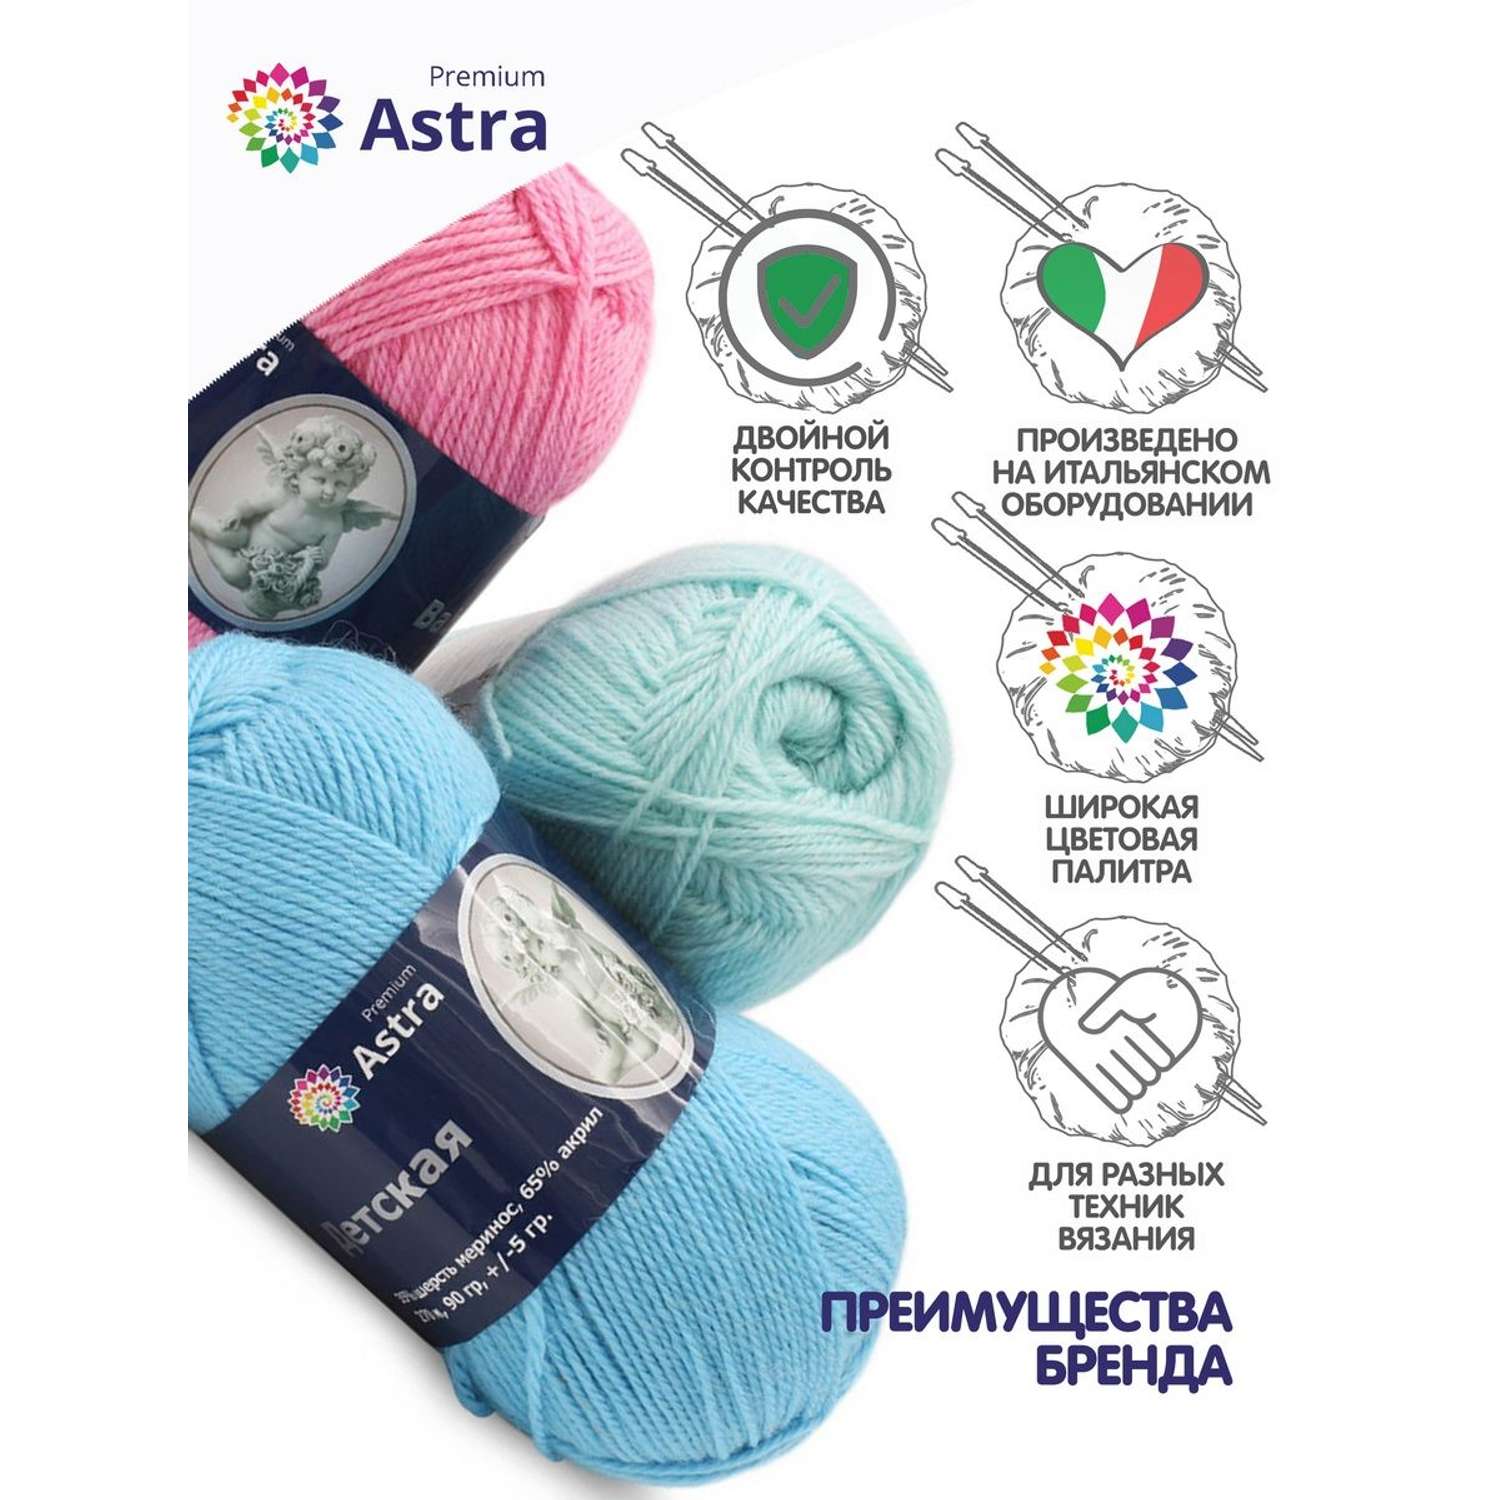 Пряжа для вязания Astra Premium детская из акрила и шерсти для детских вещей 90 гр 270 м 205 белый 3 мотка - фото 3